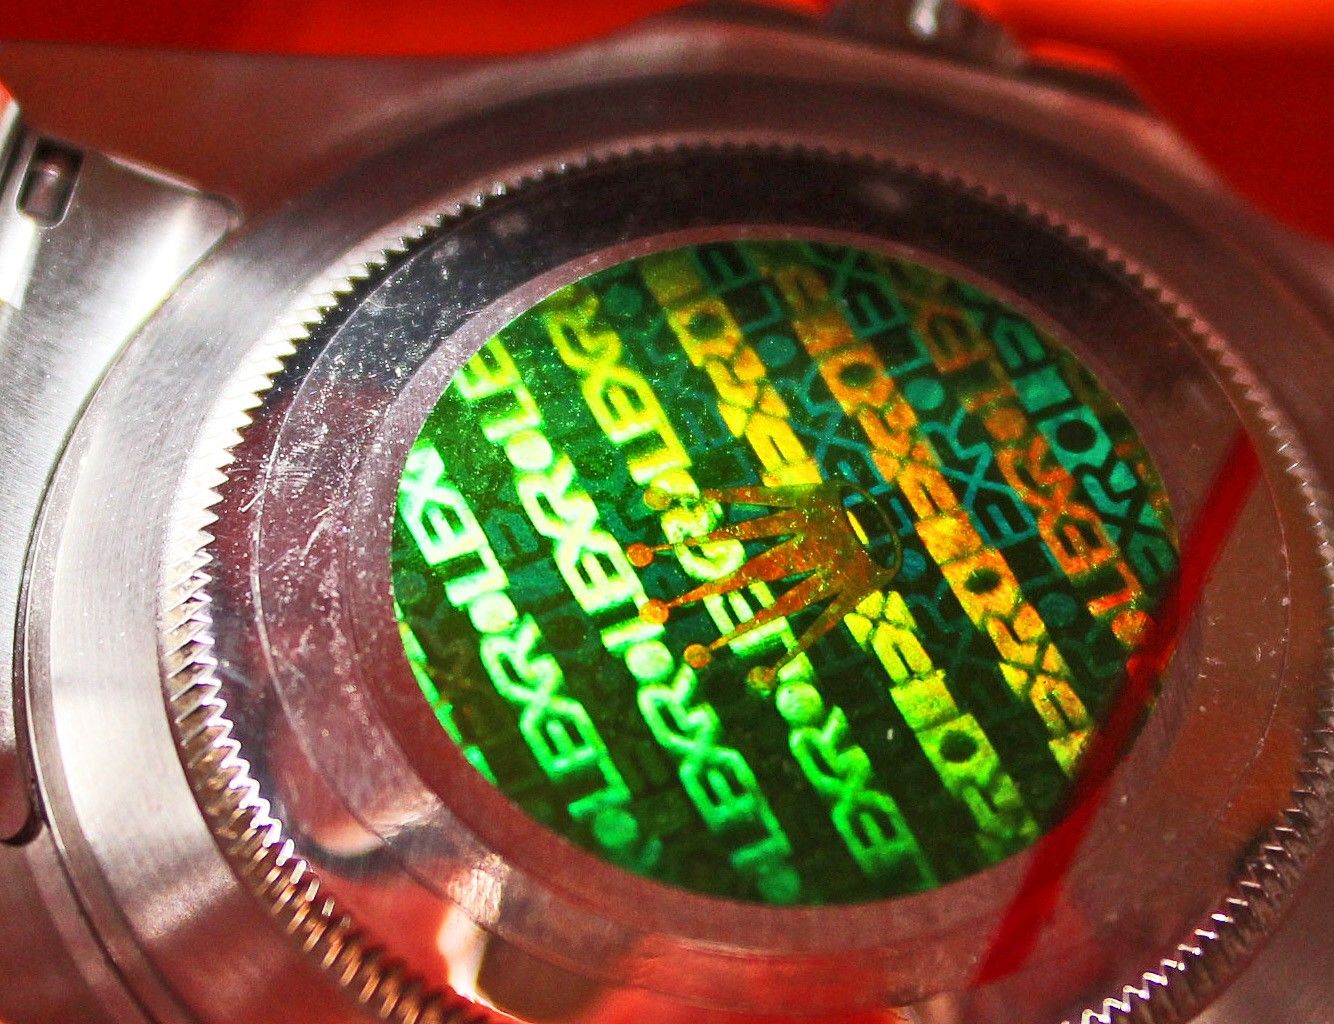 Rolex Hologramme Sticker vert 20mm Submariner, GMT, Explorer, Daytona 16610, 116520, 16710, 16700, 16760, 16570, 114270, 14060M